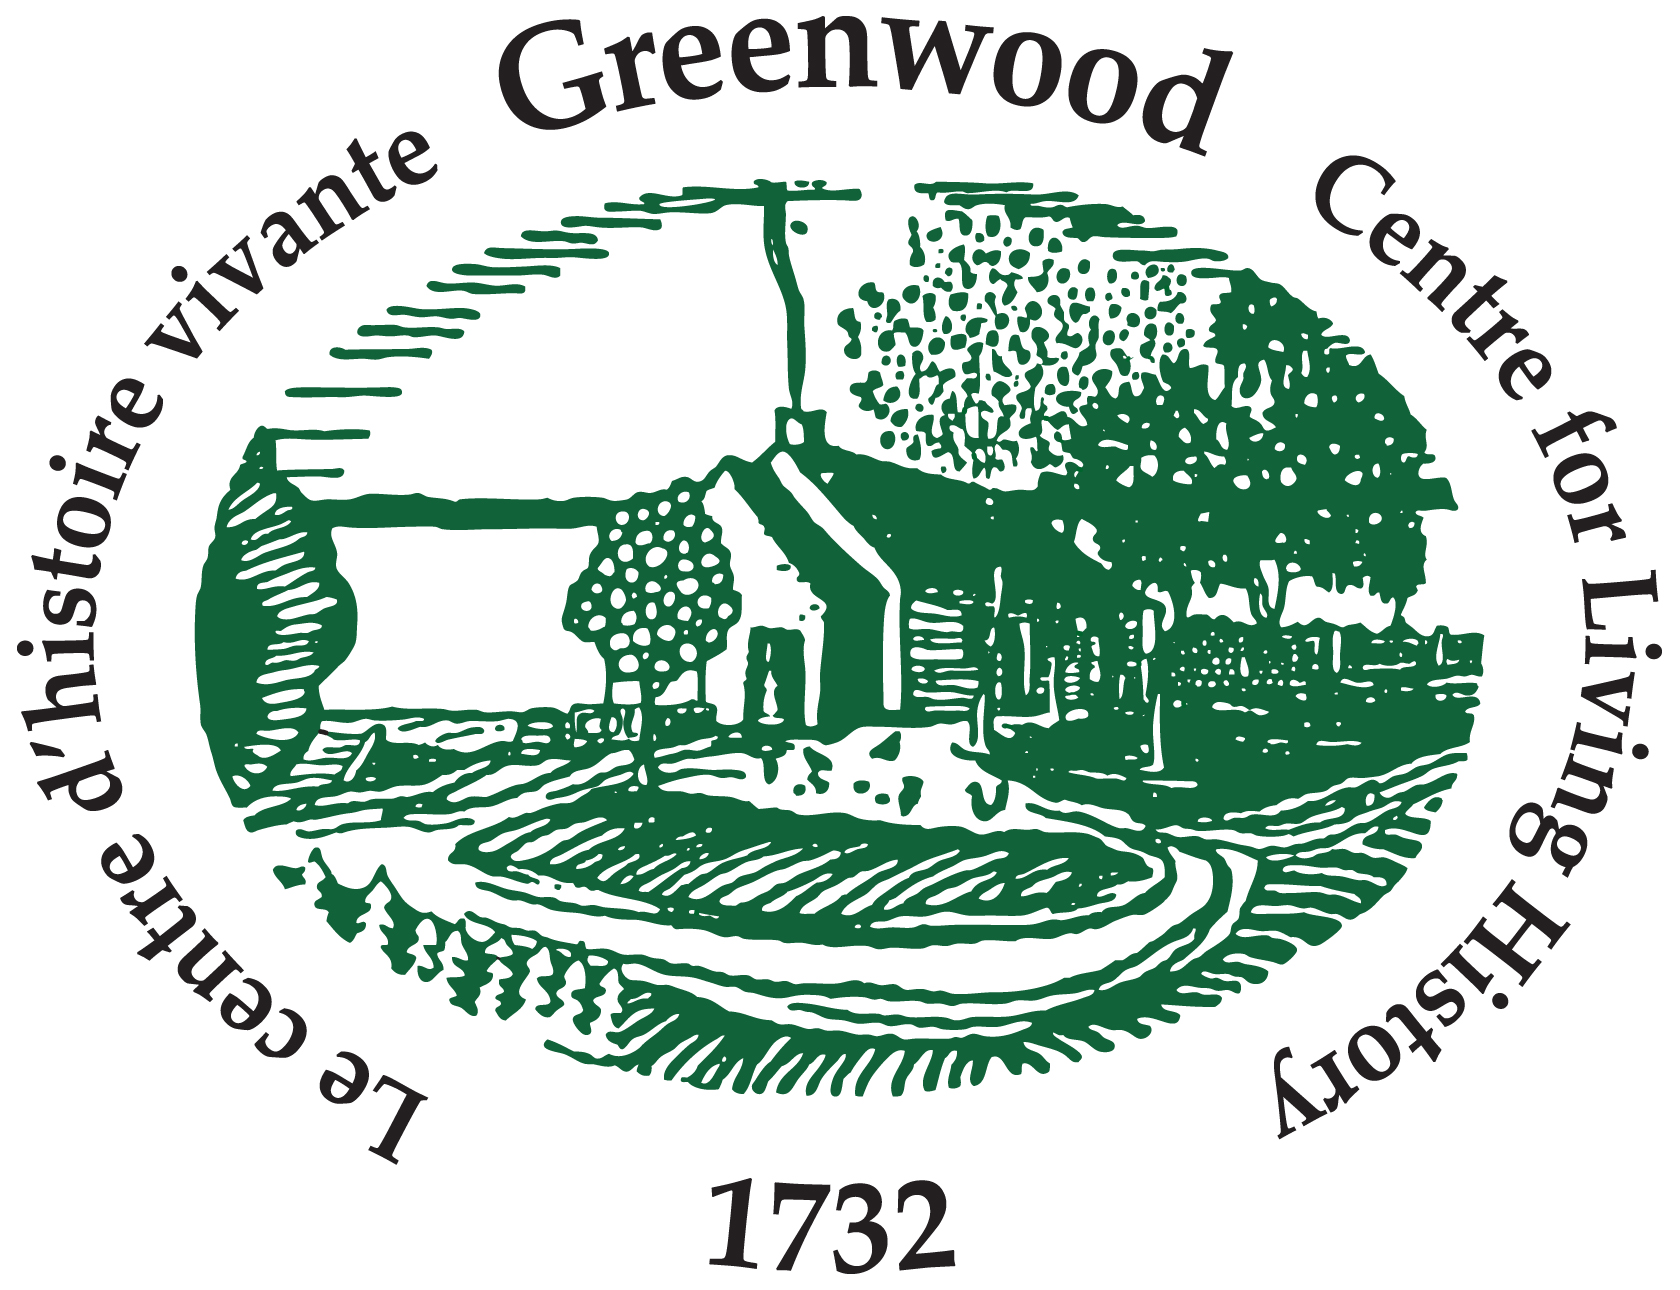 Centre d'histoire vivante Greenwood logo